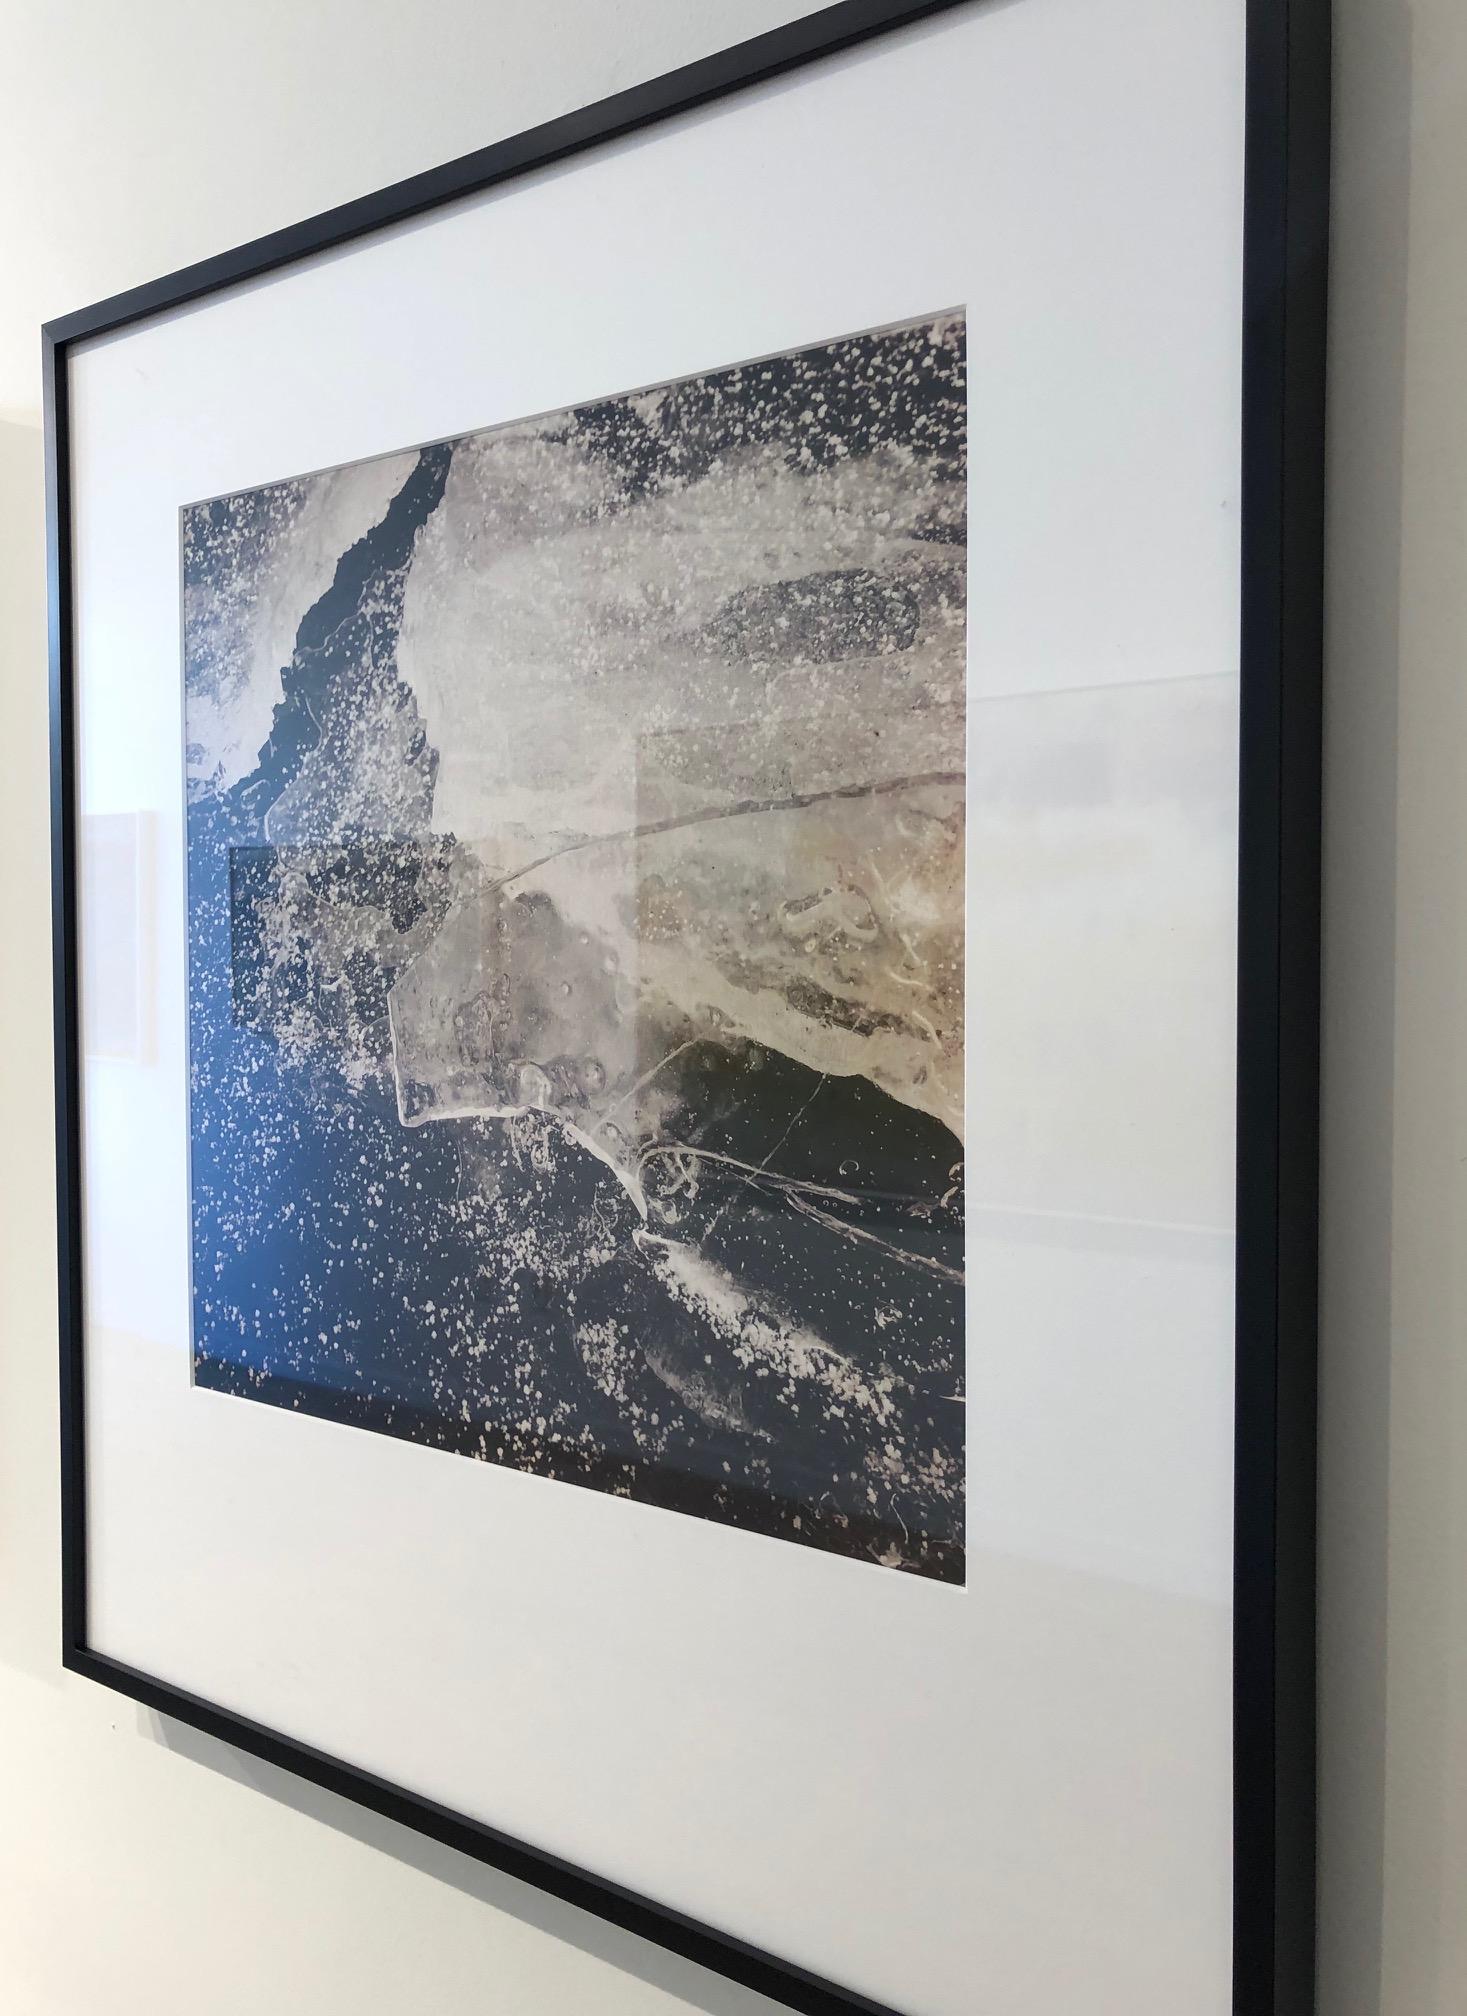 Portales de glace n° 4244 / photographie de nature en noir et blanc - Photograph de Alyson Belcher